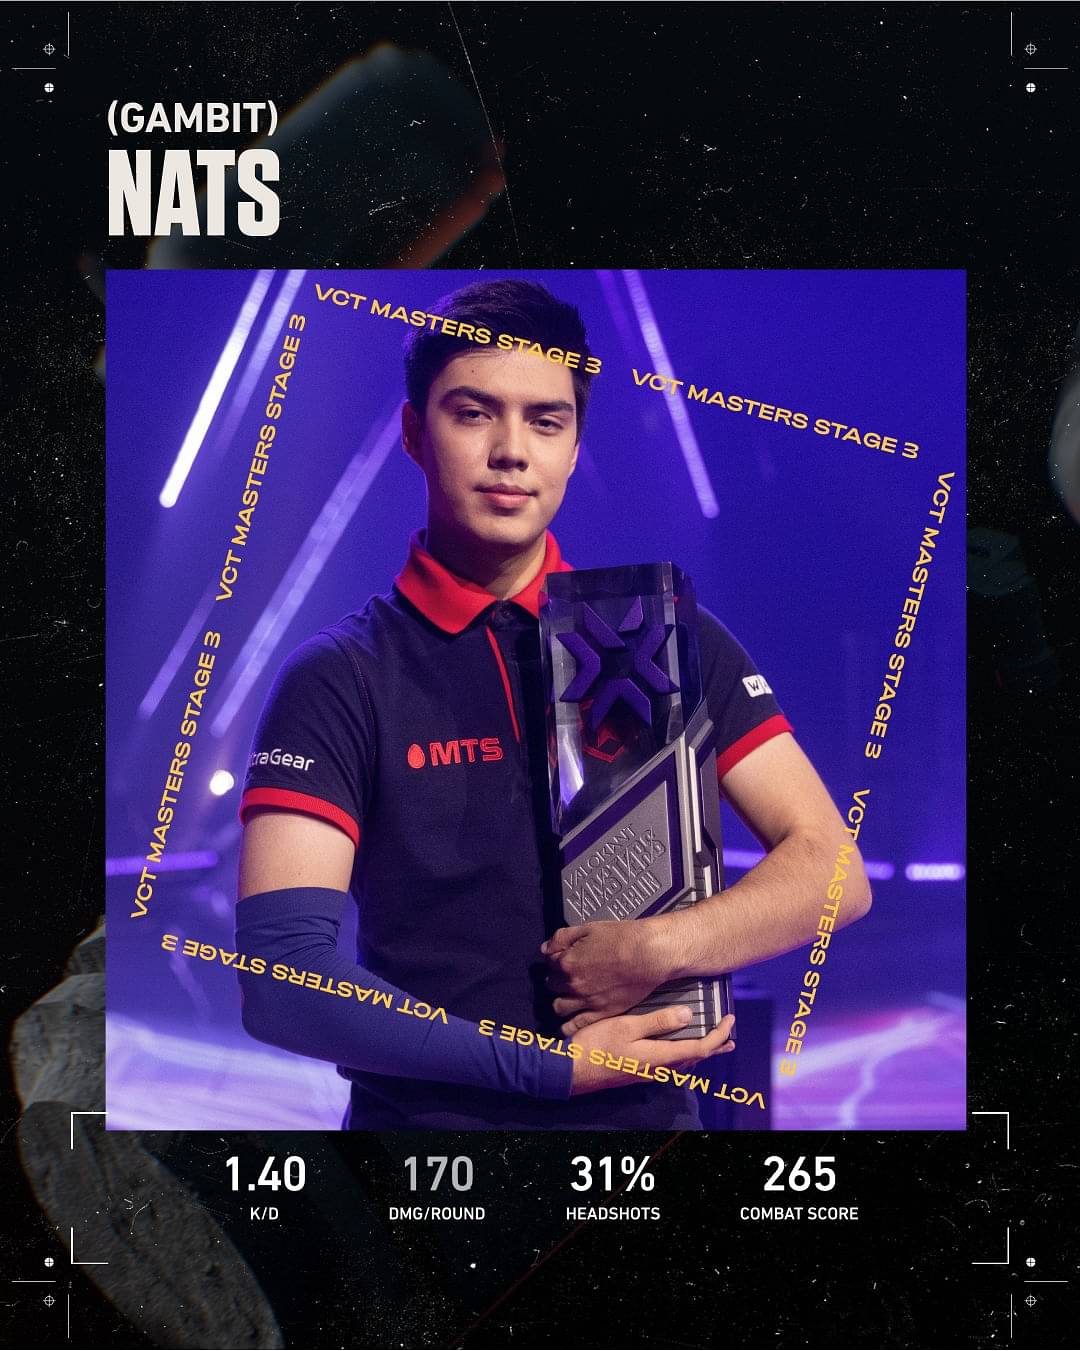 Nats master stats